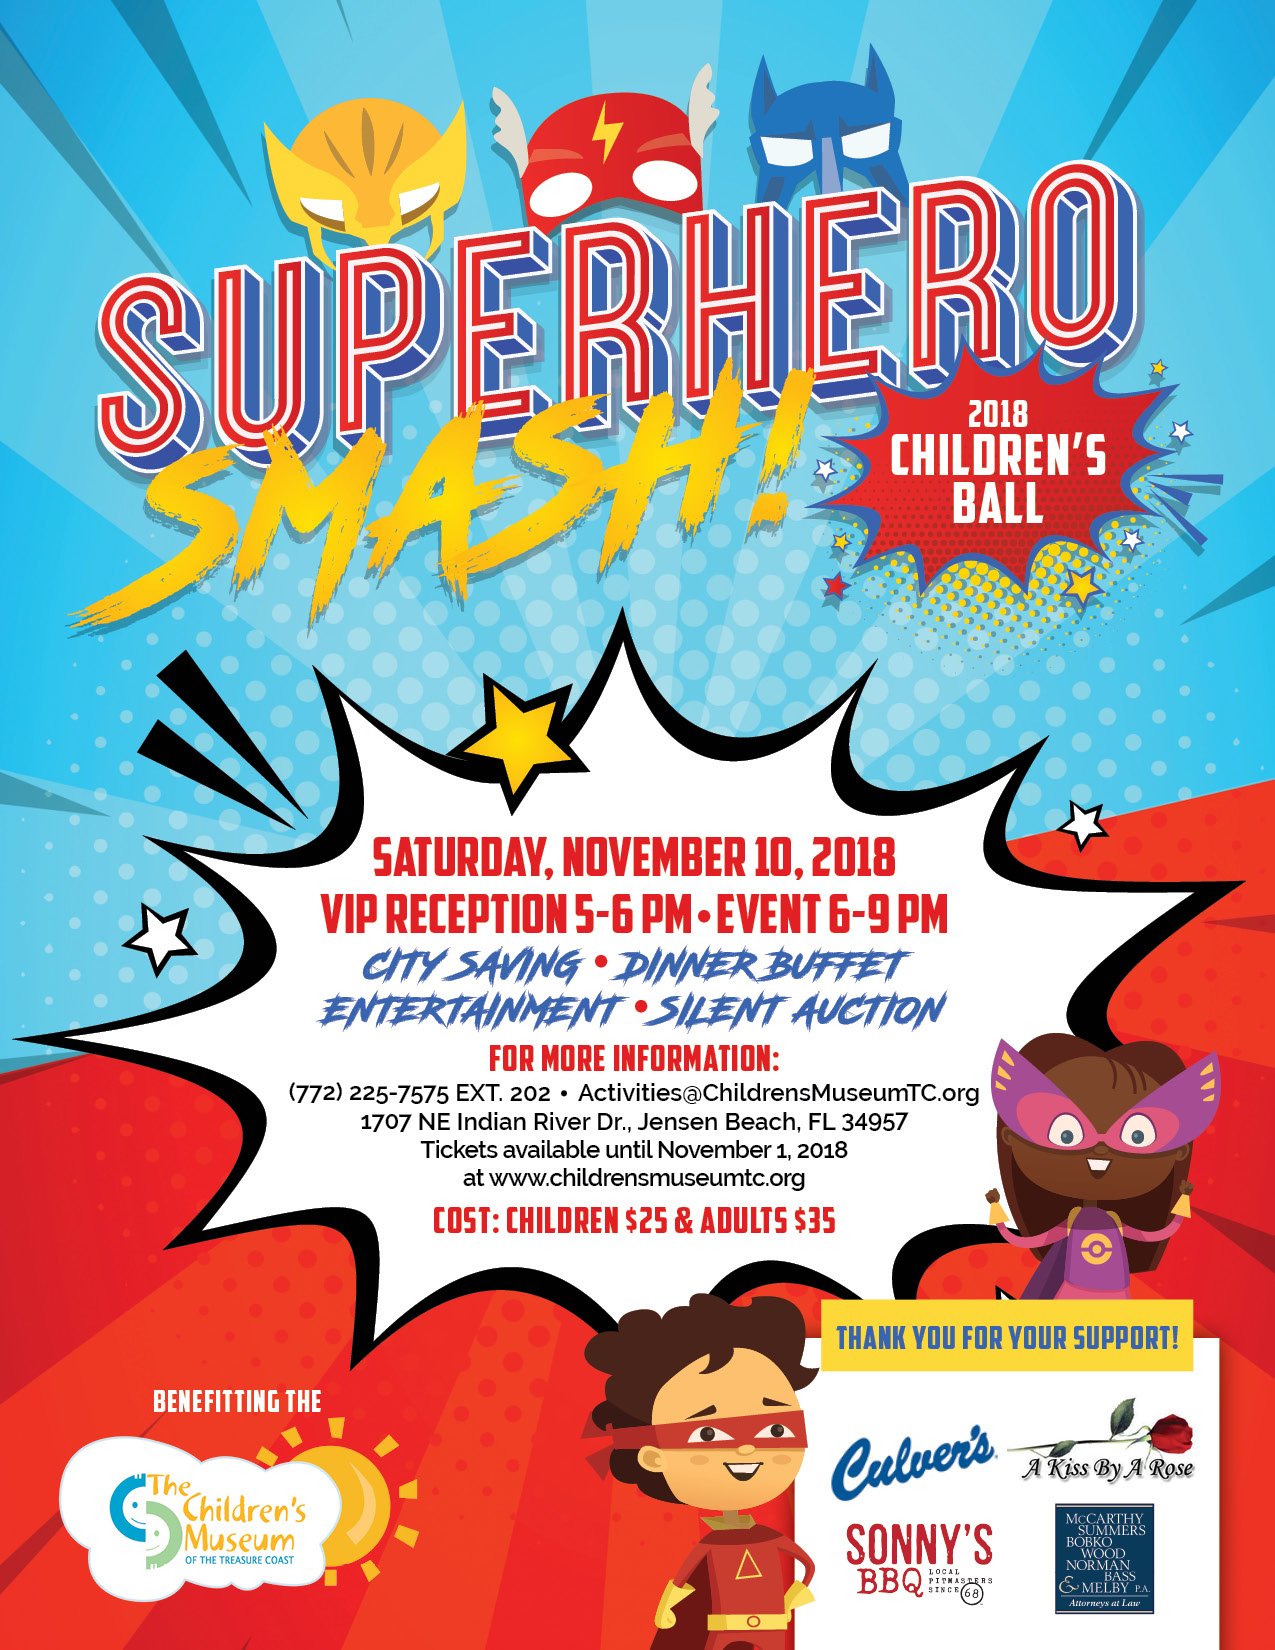 Children's Ball  Superhero Smash! — Children's Museum of the Treasure Coast